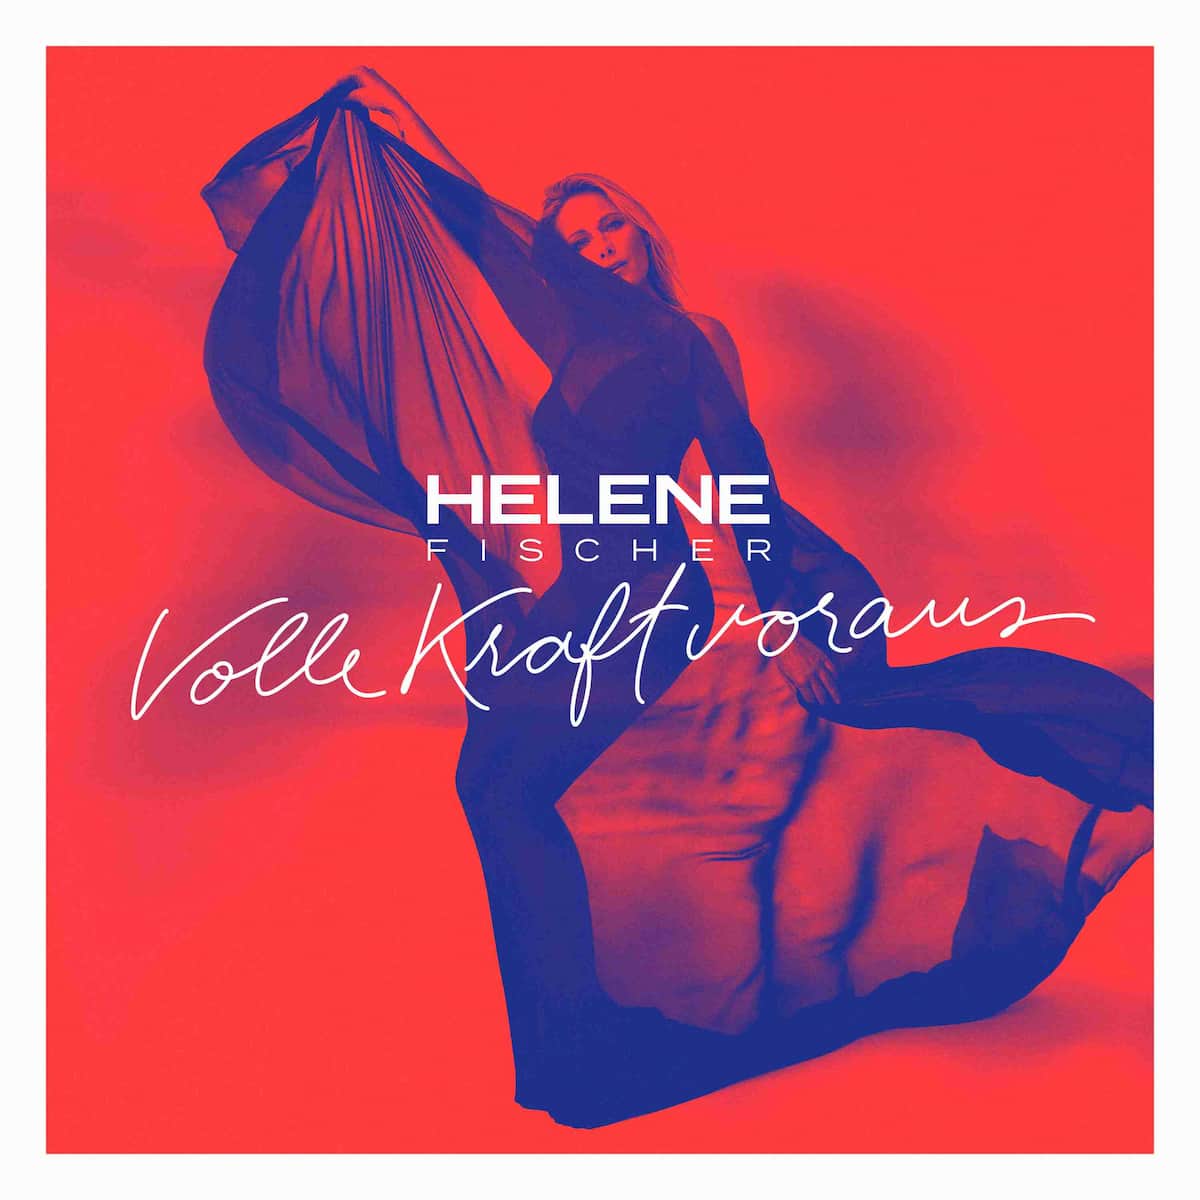 Helene Fischer "Volle Kraft voraus" - neuer Song aus CD 2021 veröffentlicht